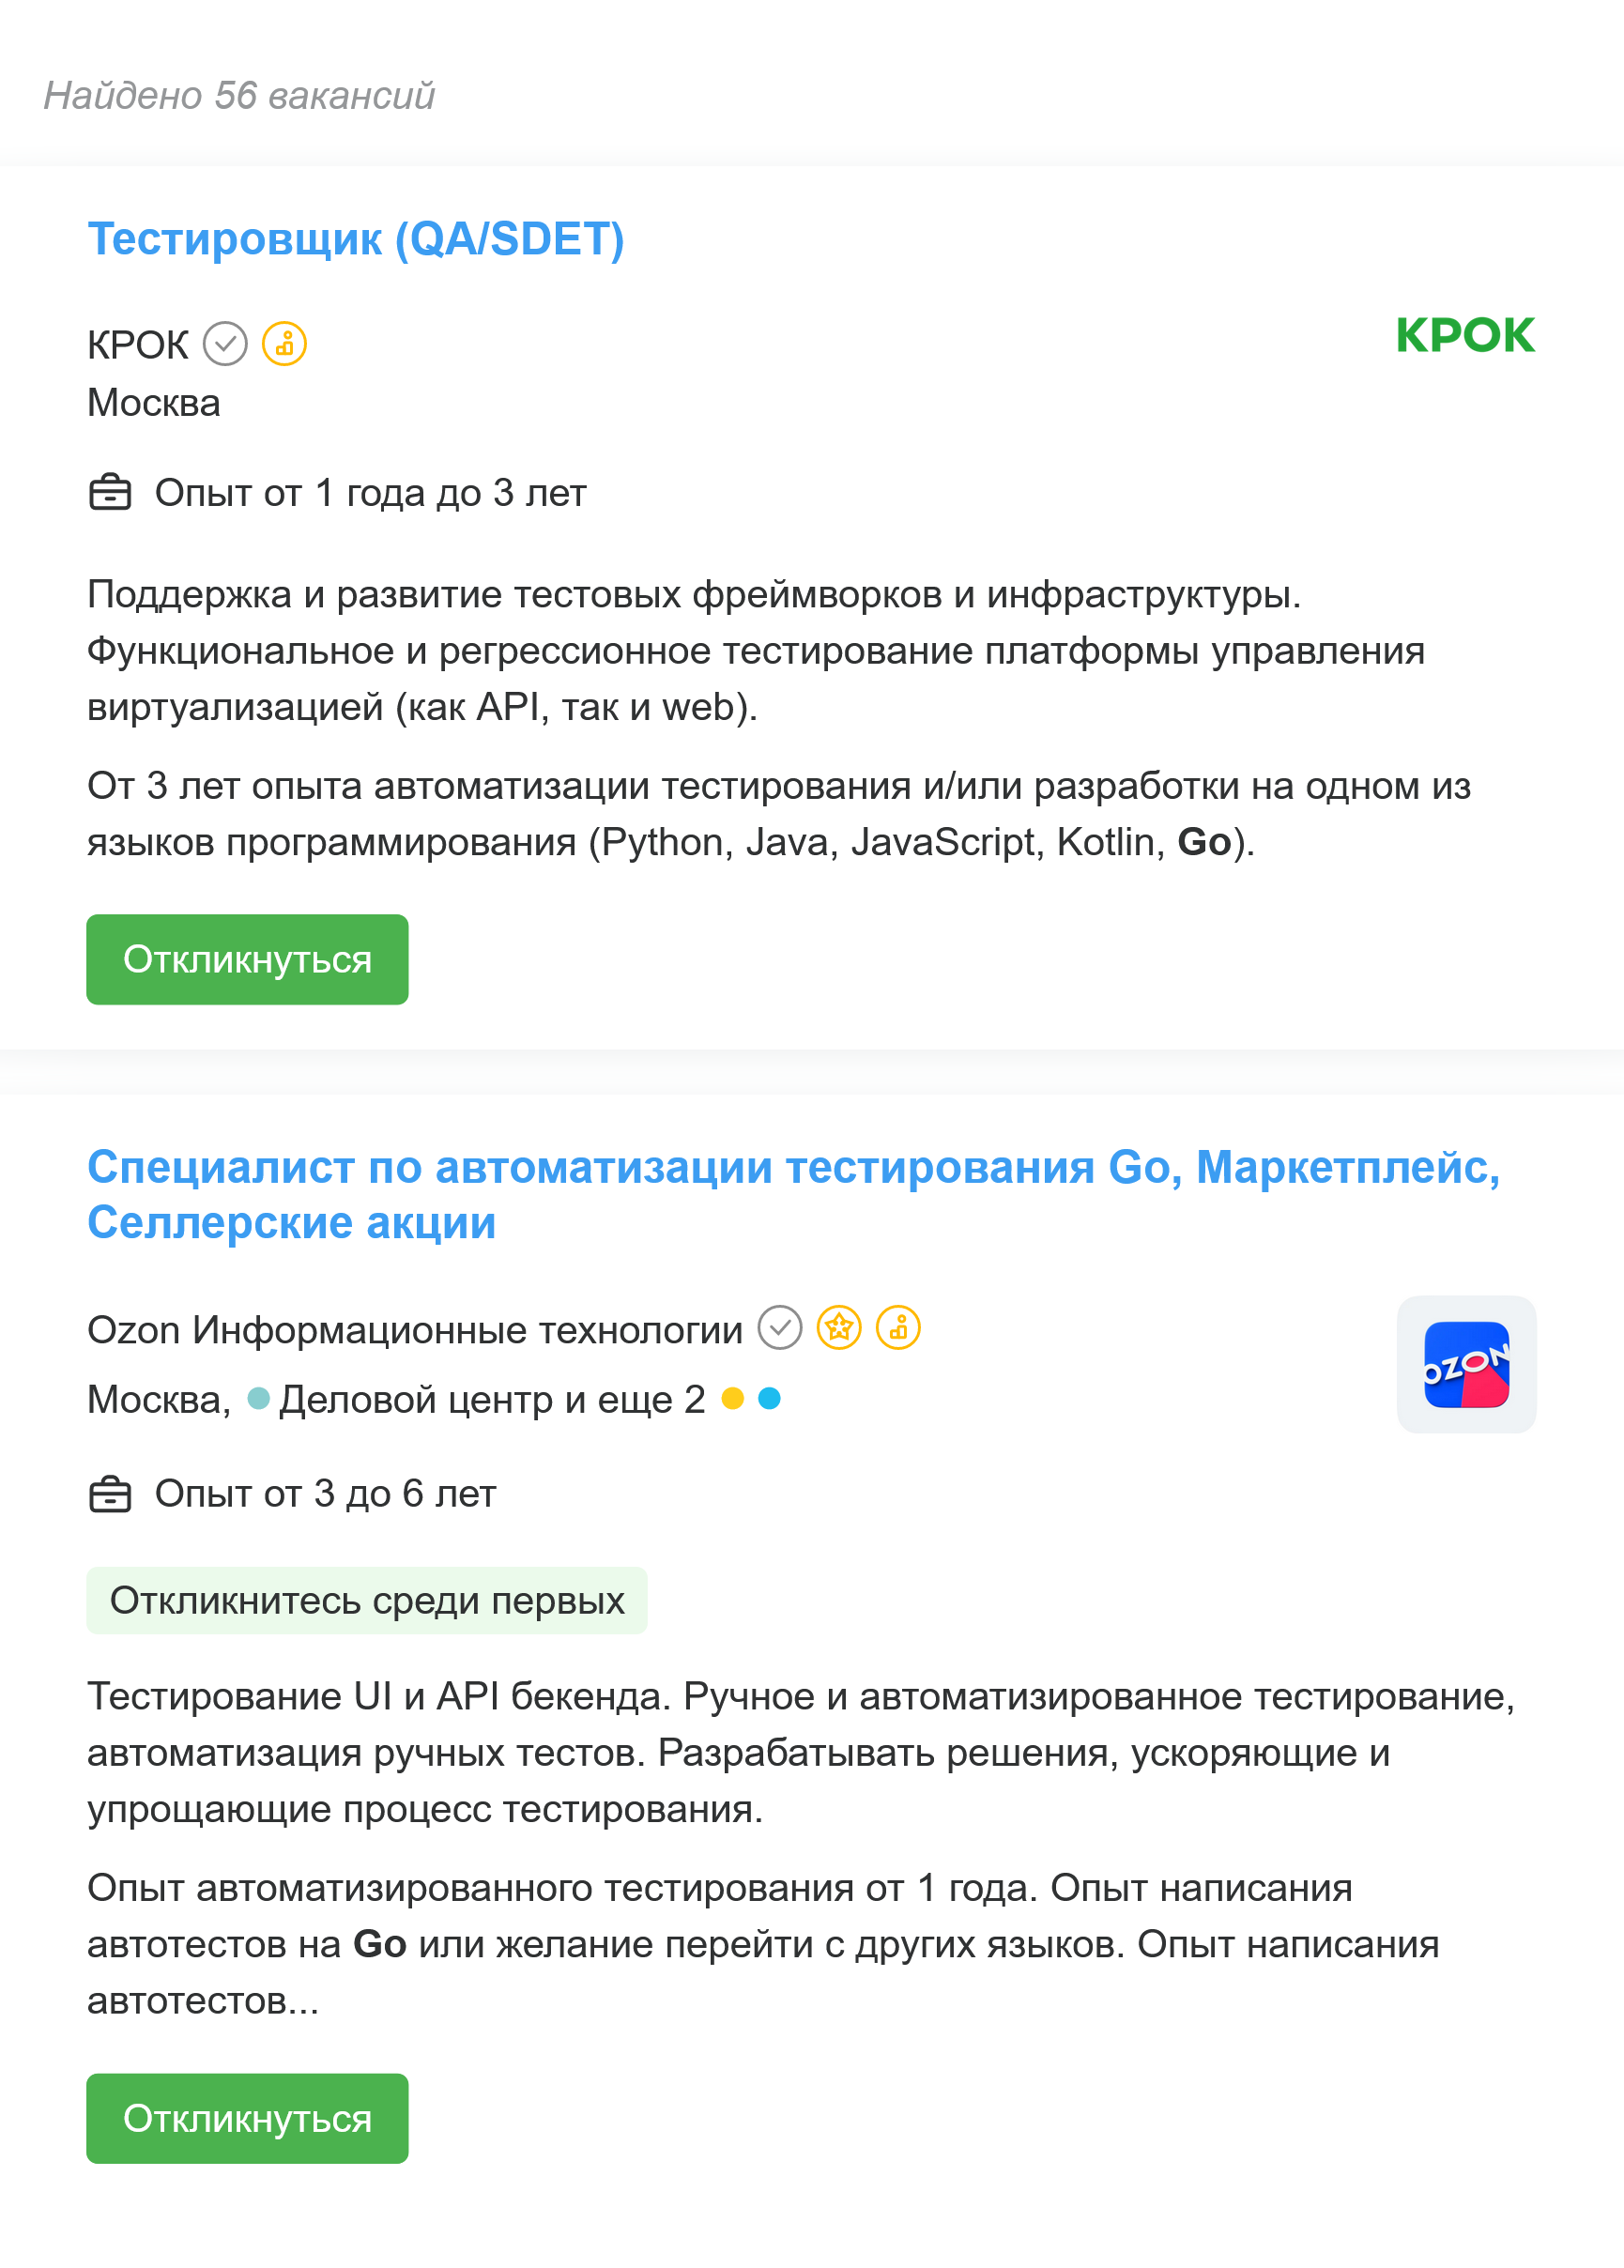 Всего 56 вакансий по запросу «go⁠-⁠тестировщик», часть из которых относится к разработке. Источник: hh.ru